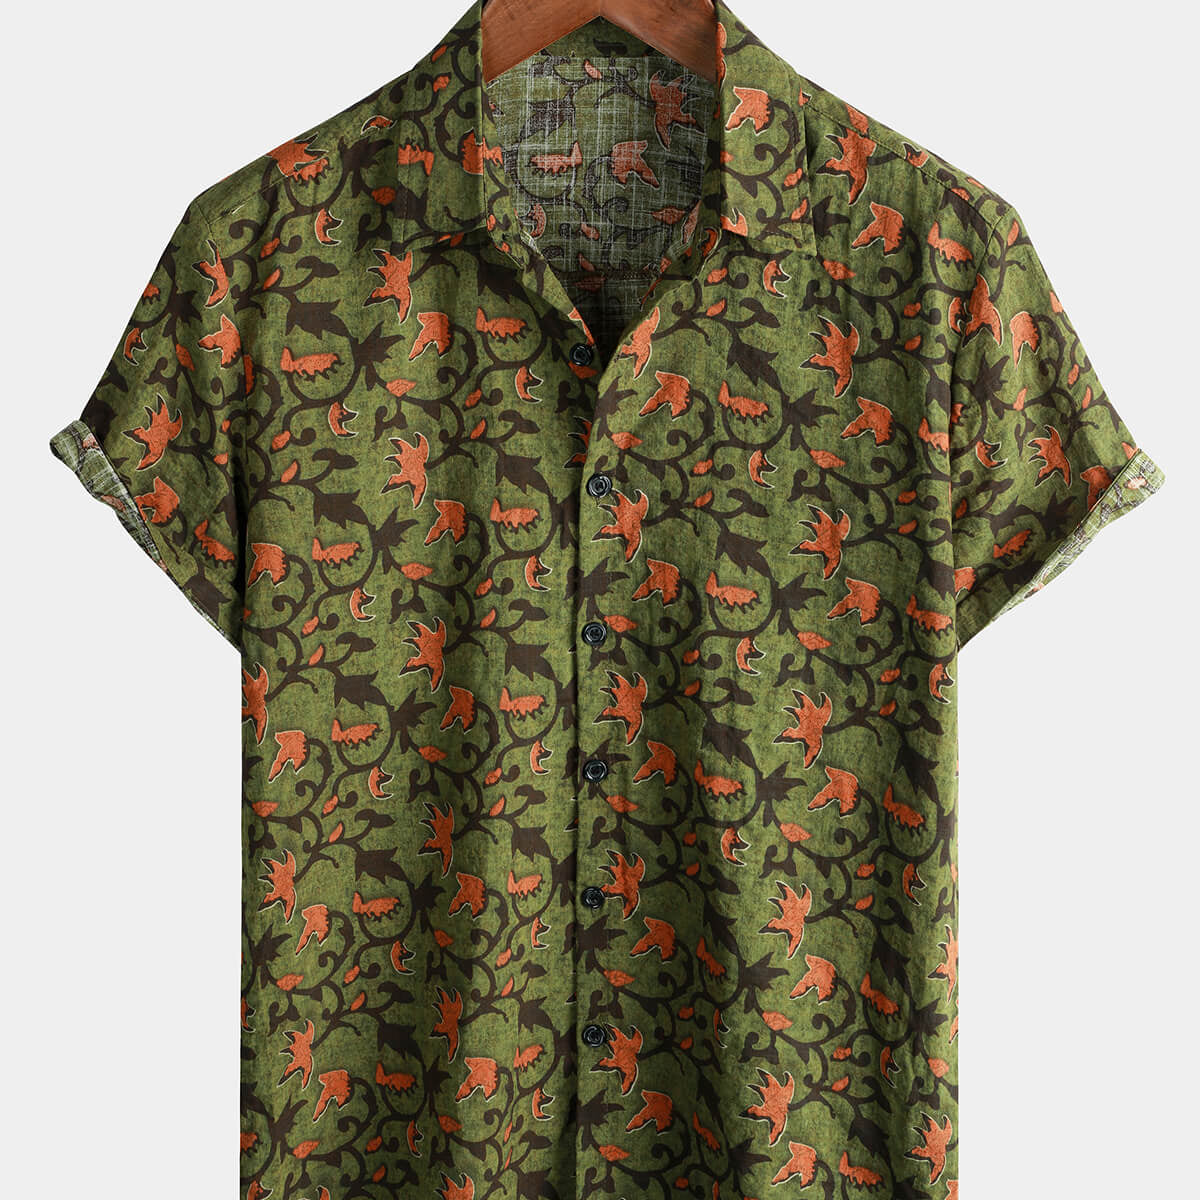 Camisa de manga corta con botones para playa, diseño floral hawaiano de algodón vintage de los años 70 para hombre